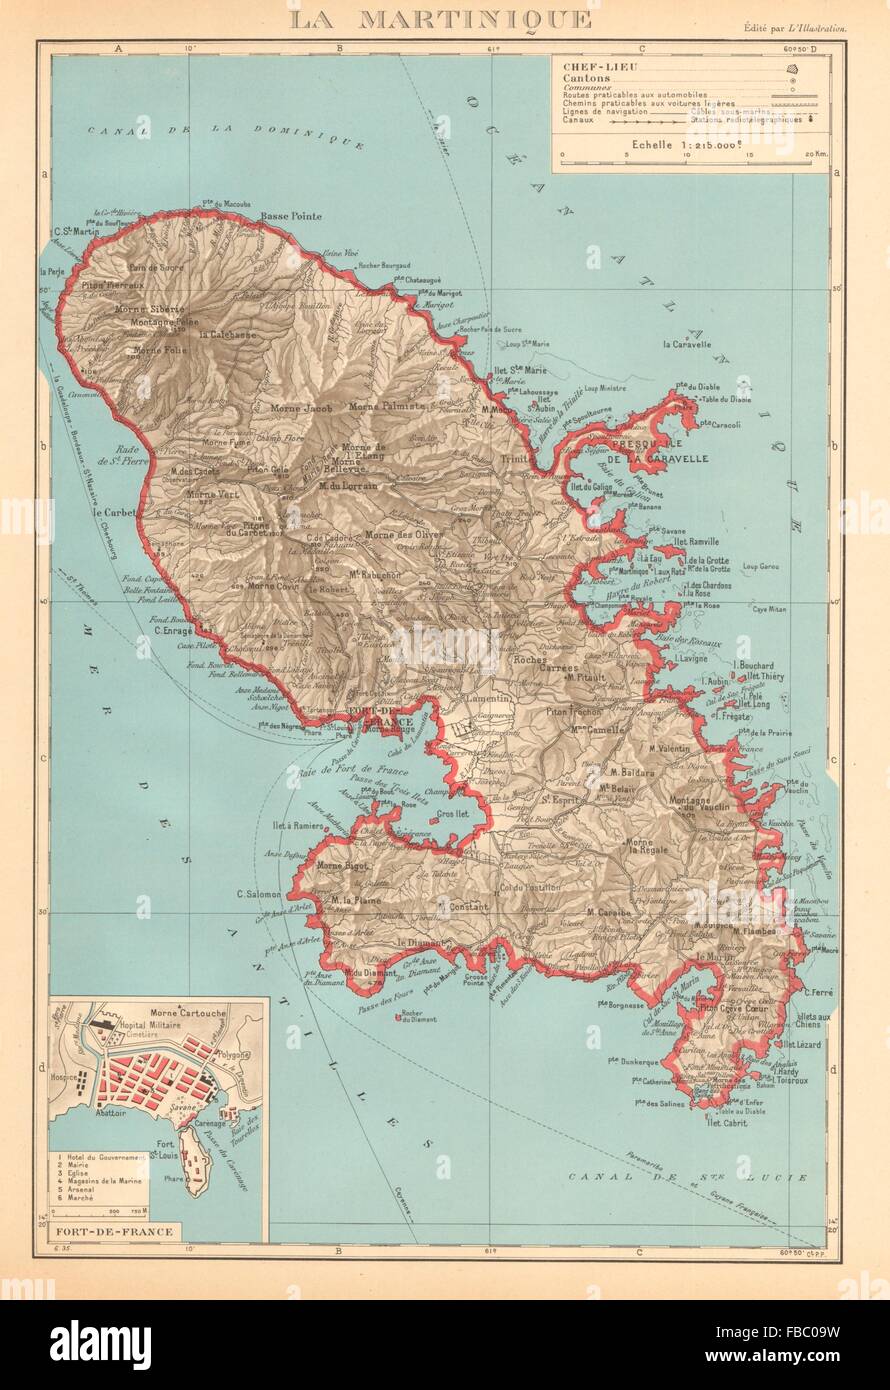 MARTINIQUE. Fort-de-France plan. Antilles françaises French West Indies 1938 map Stock Photo